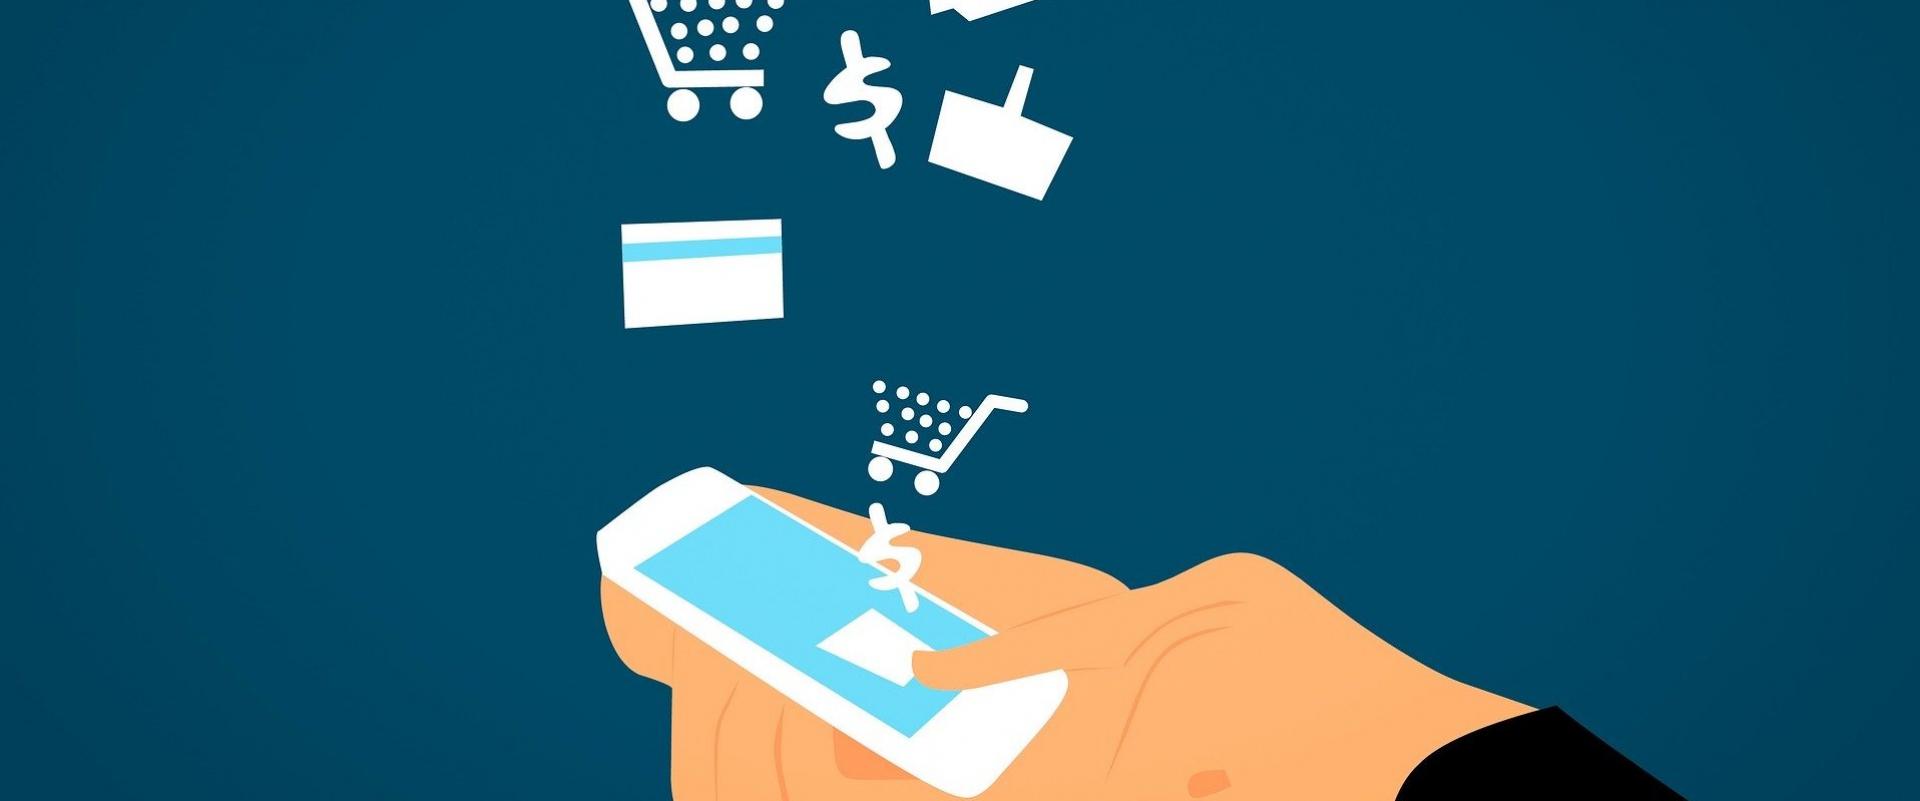 BLIK: e-commerce na długo będzie głównym miejscem zakupów Polaków